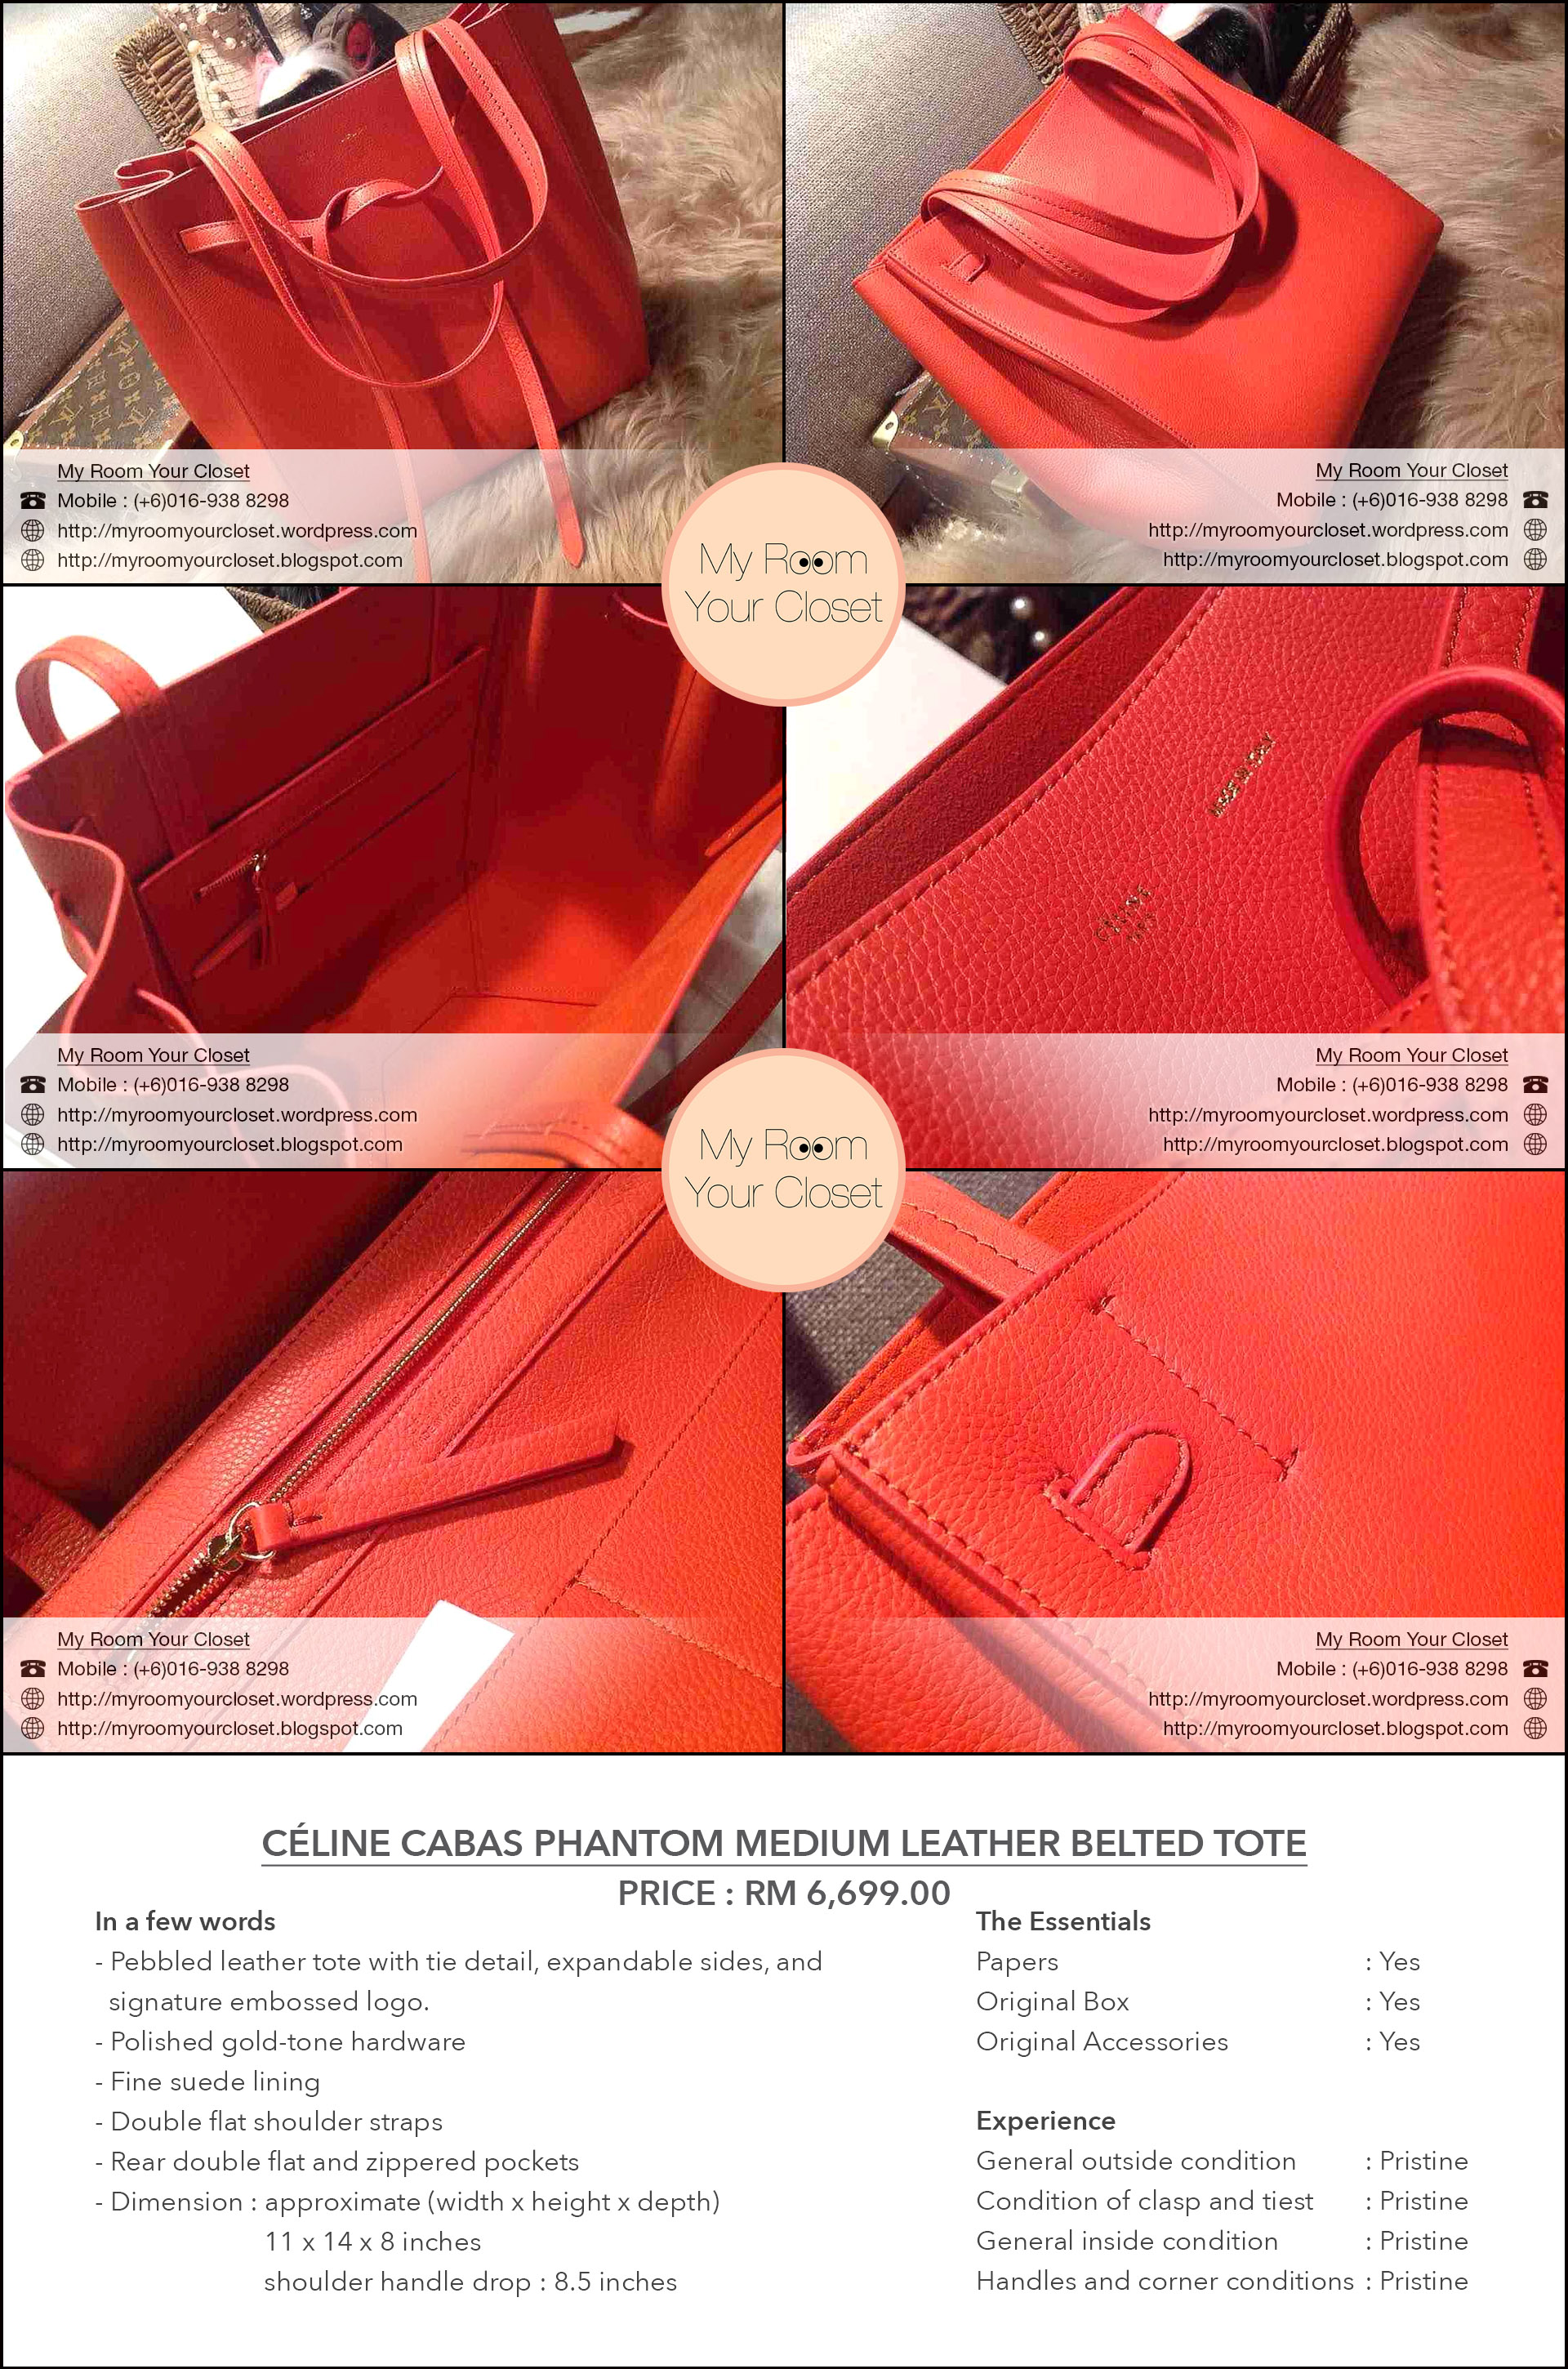 Cline Cabas Phantom Medium Leather Belted Tote \u2013 MRYC \u2013 My Room ...  